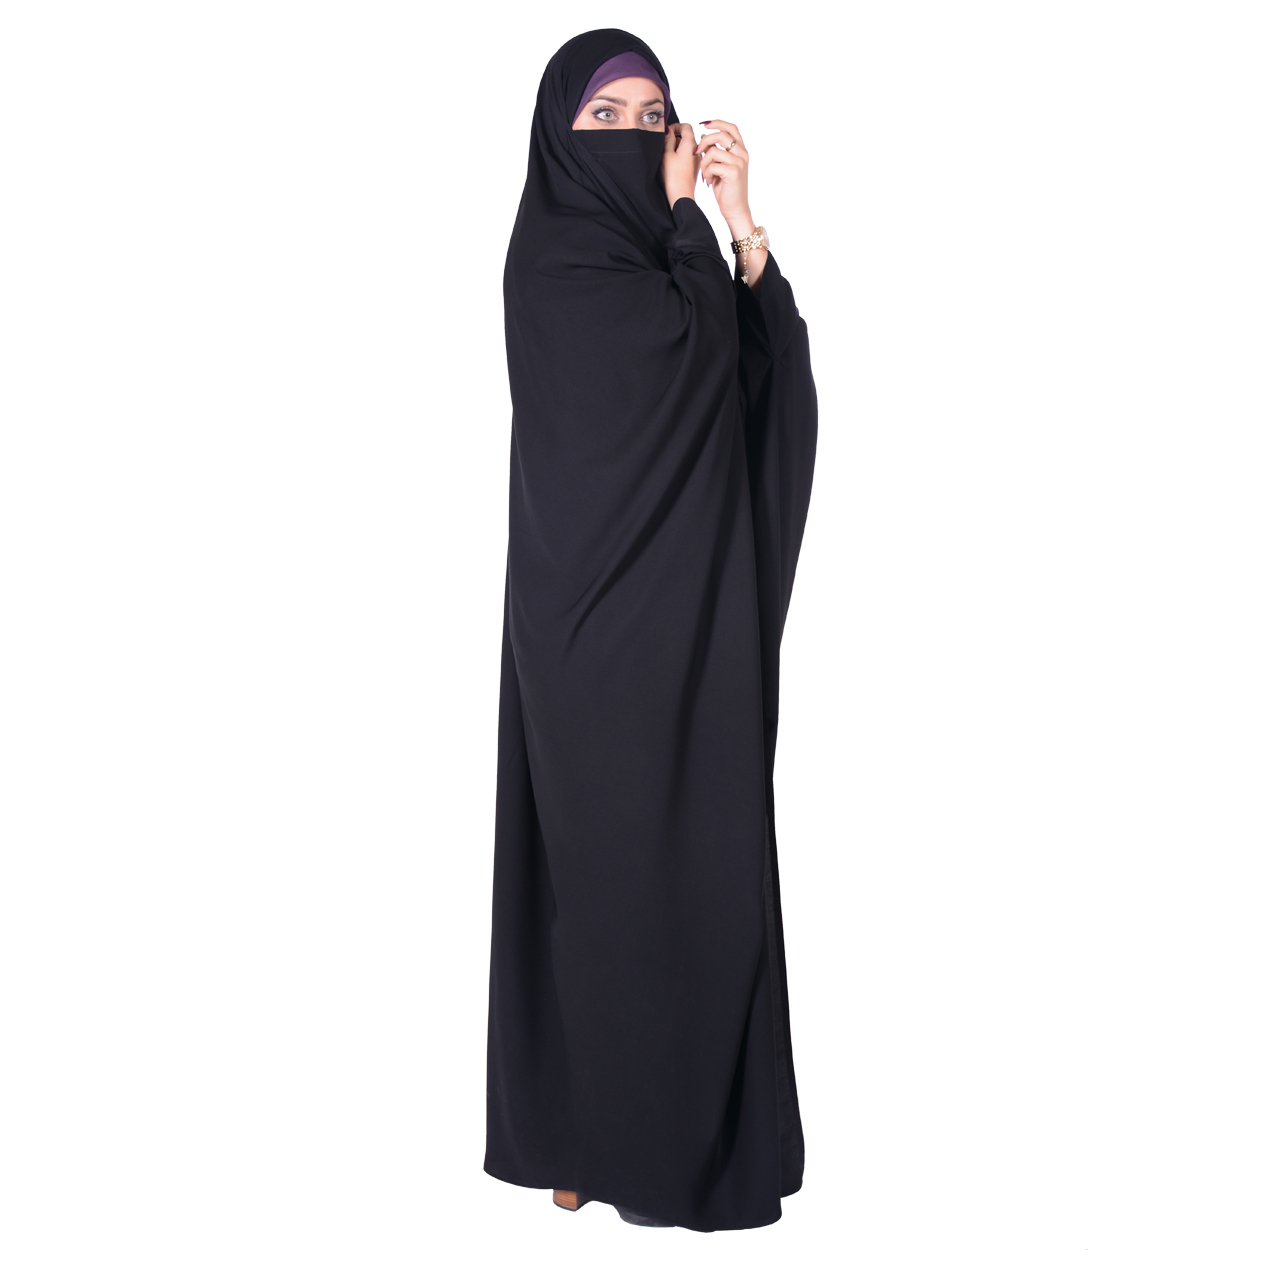 نکته خرید - قیمت روز چادر بحرینی شهر حجاب مدل کرپ کن کن ژرژت کد 8041 خرید